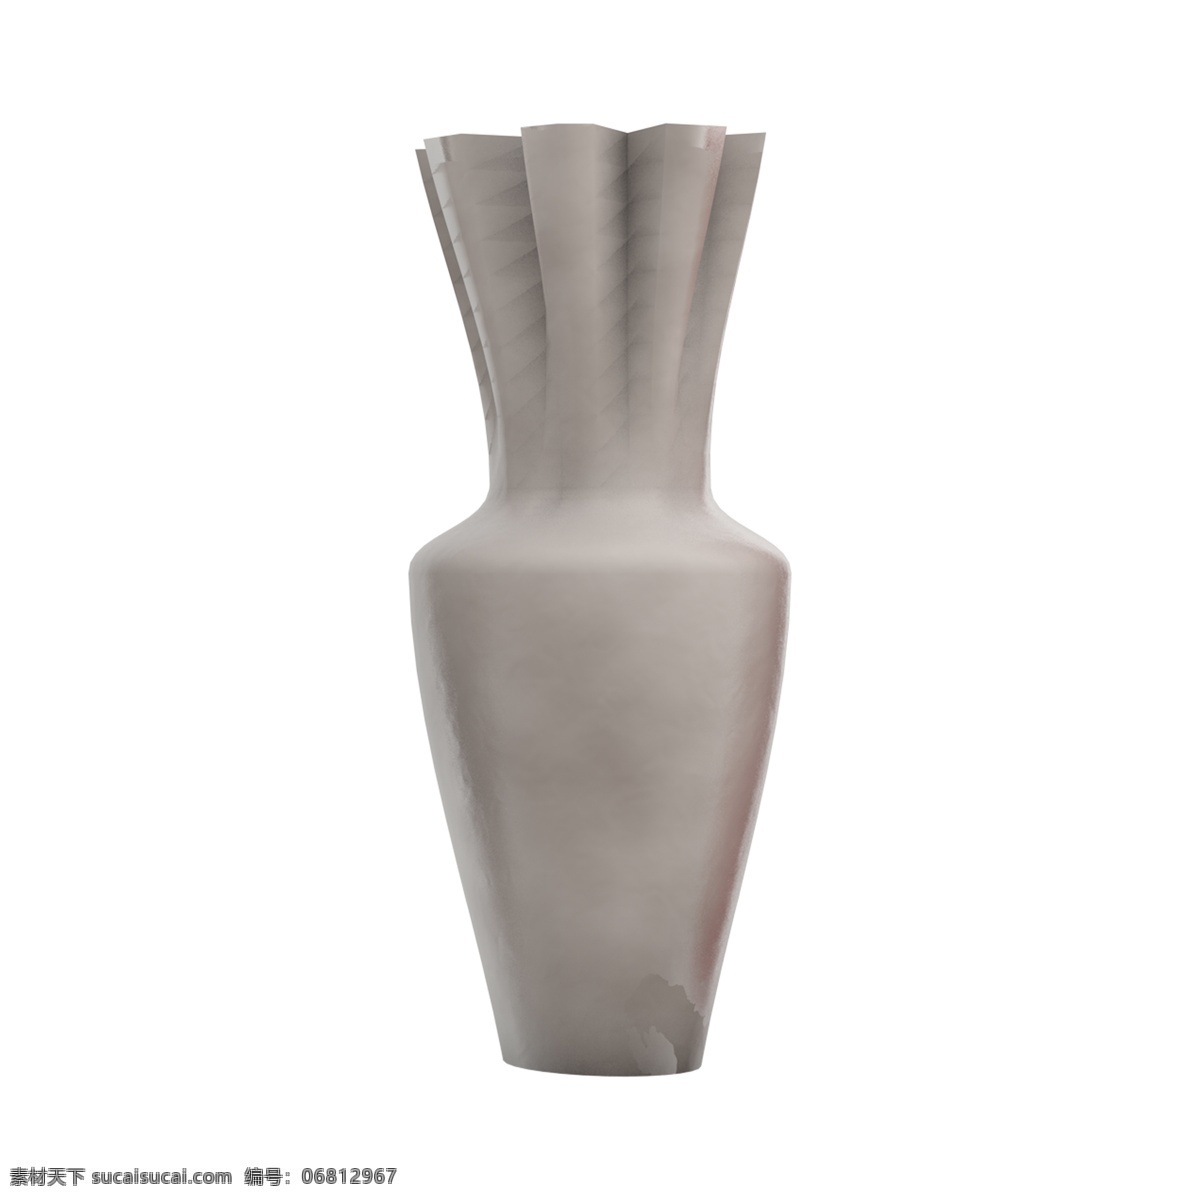 灰色 现代 欧式 艺术 花瓶 生活 装饰用品 陶瓷 瓶子 褐色 红色 摆件 欧式艺术 生活装饰用品 陶瓷瓶子 青灰色 质感花瓶